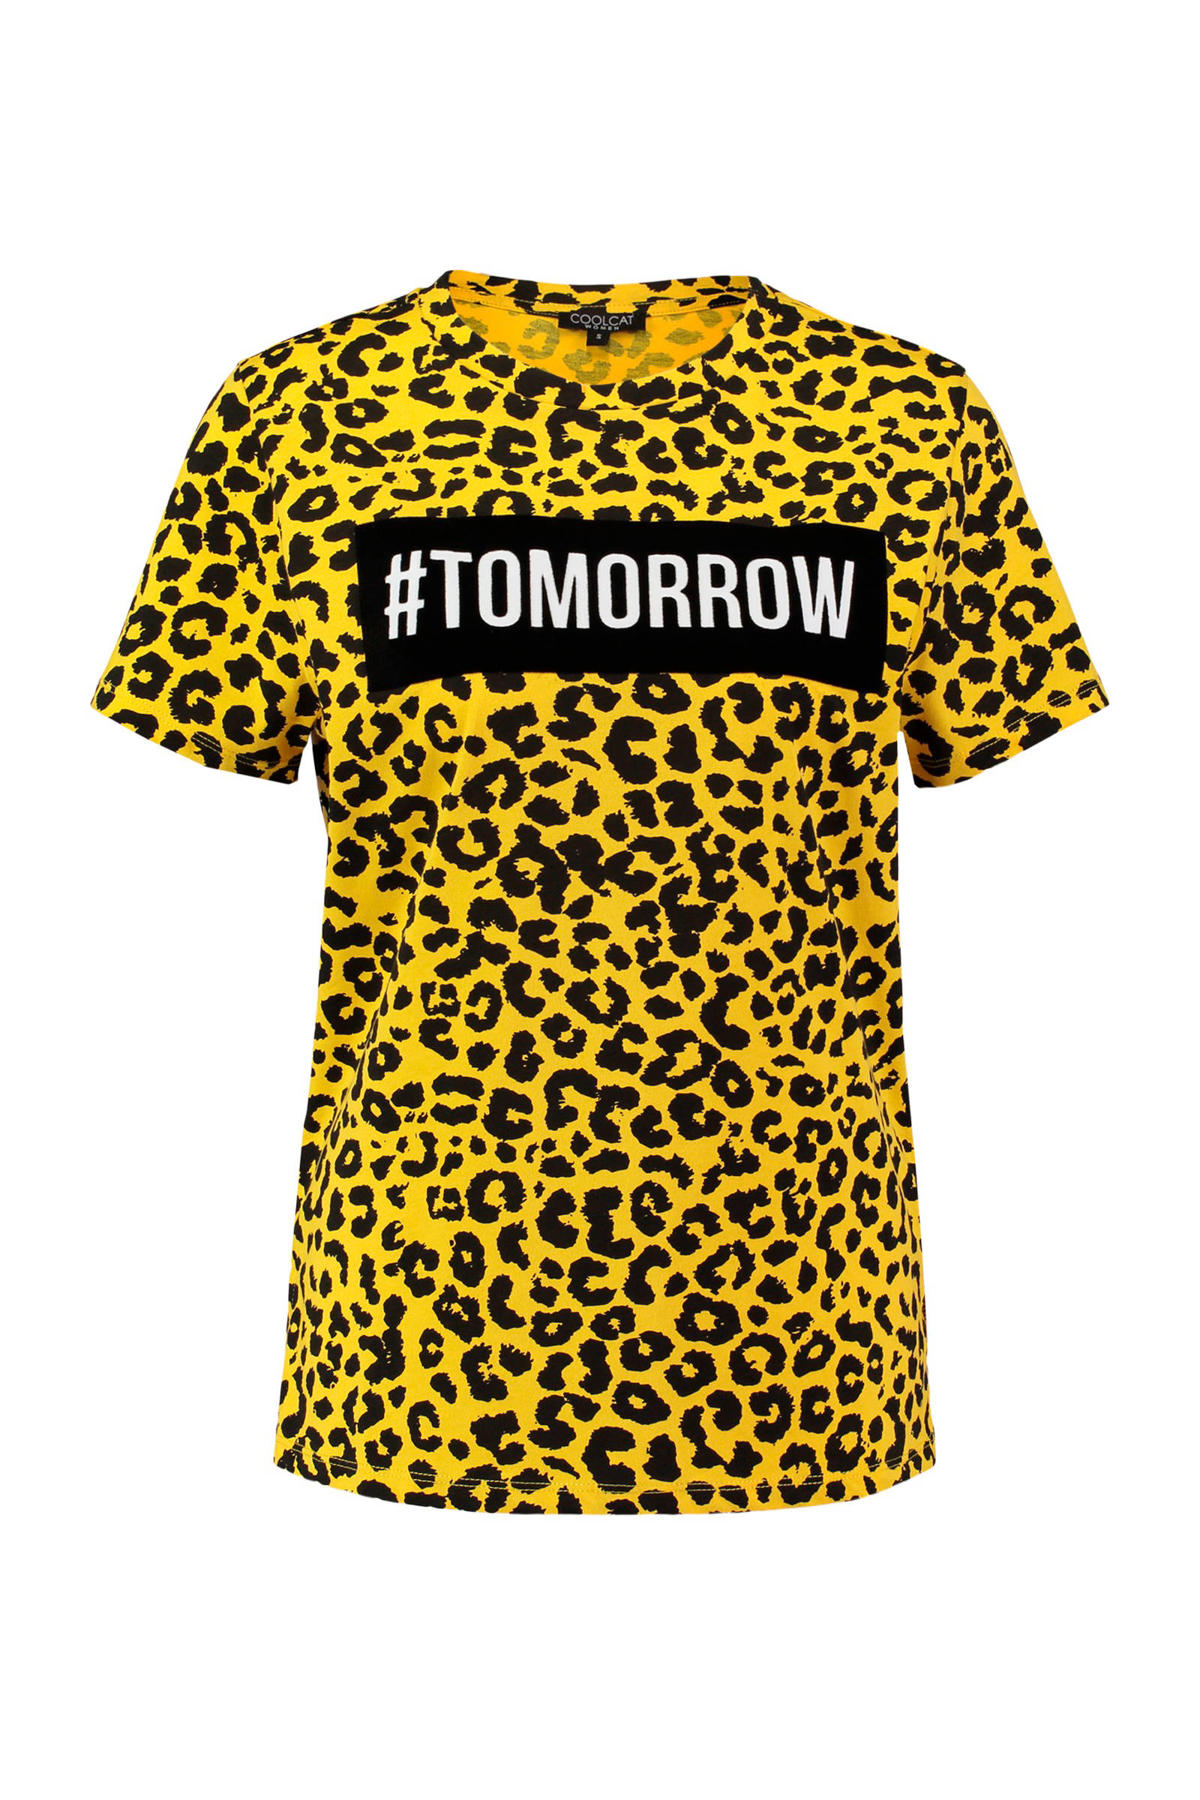 kiespijn instant Integraal CoolCat T-shirt met panterprint geel | wehkamp